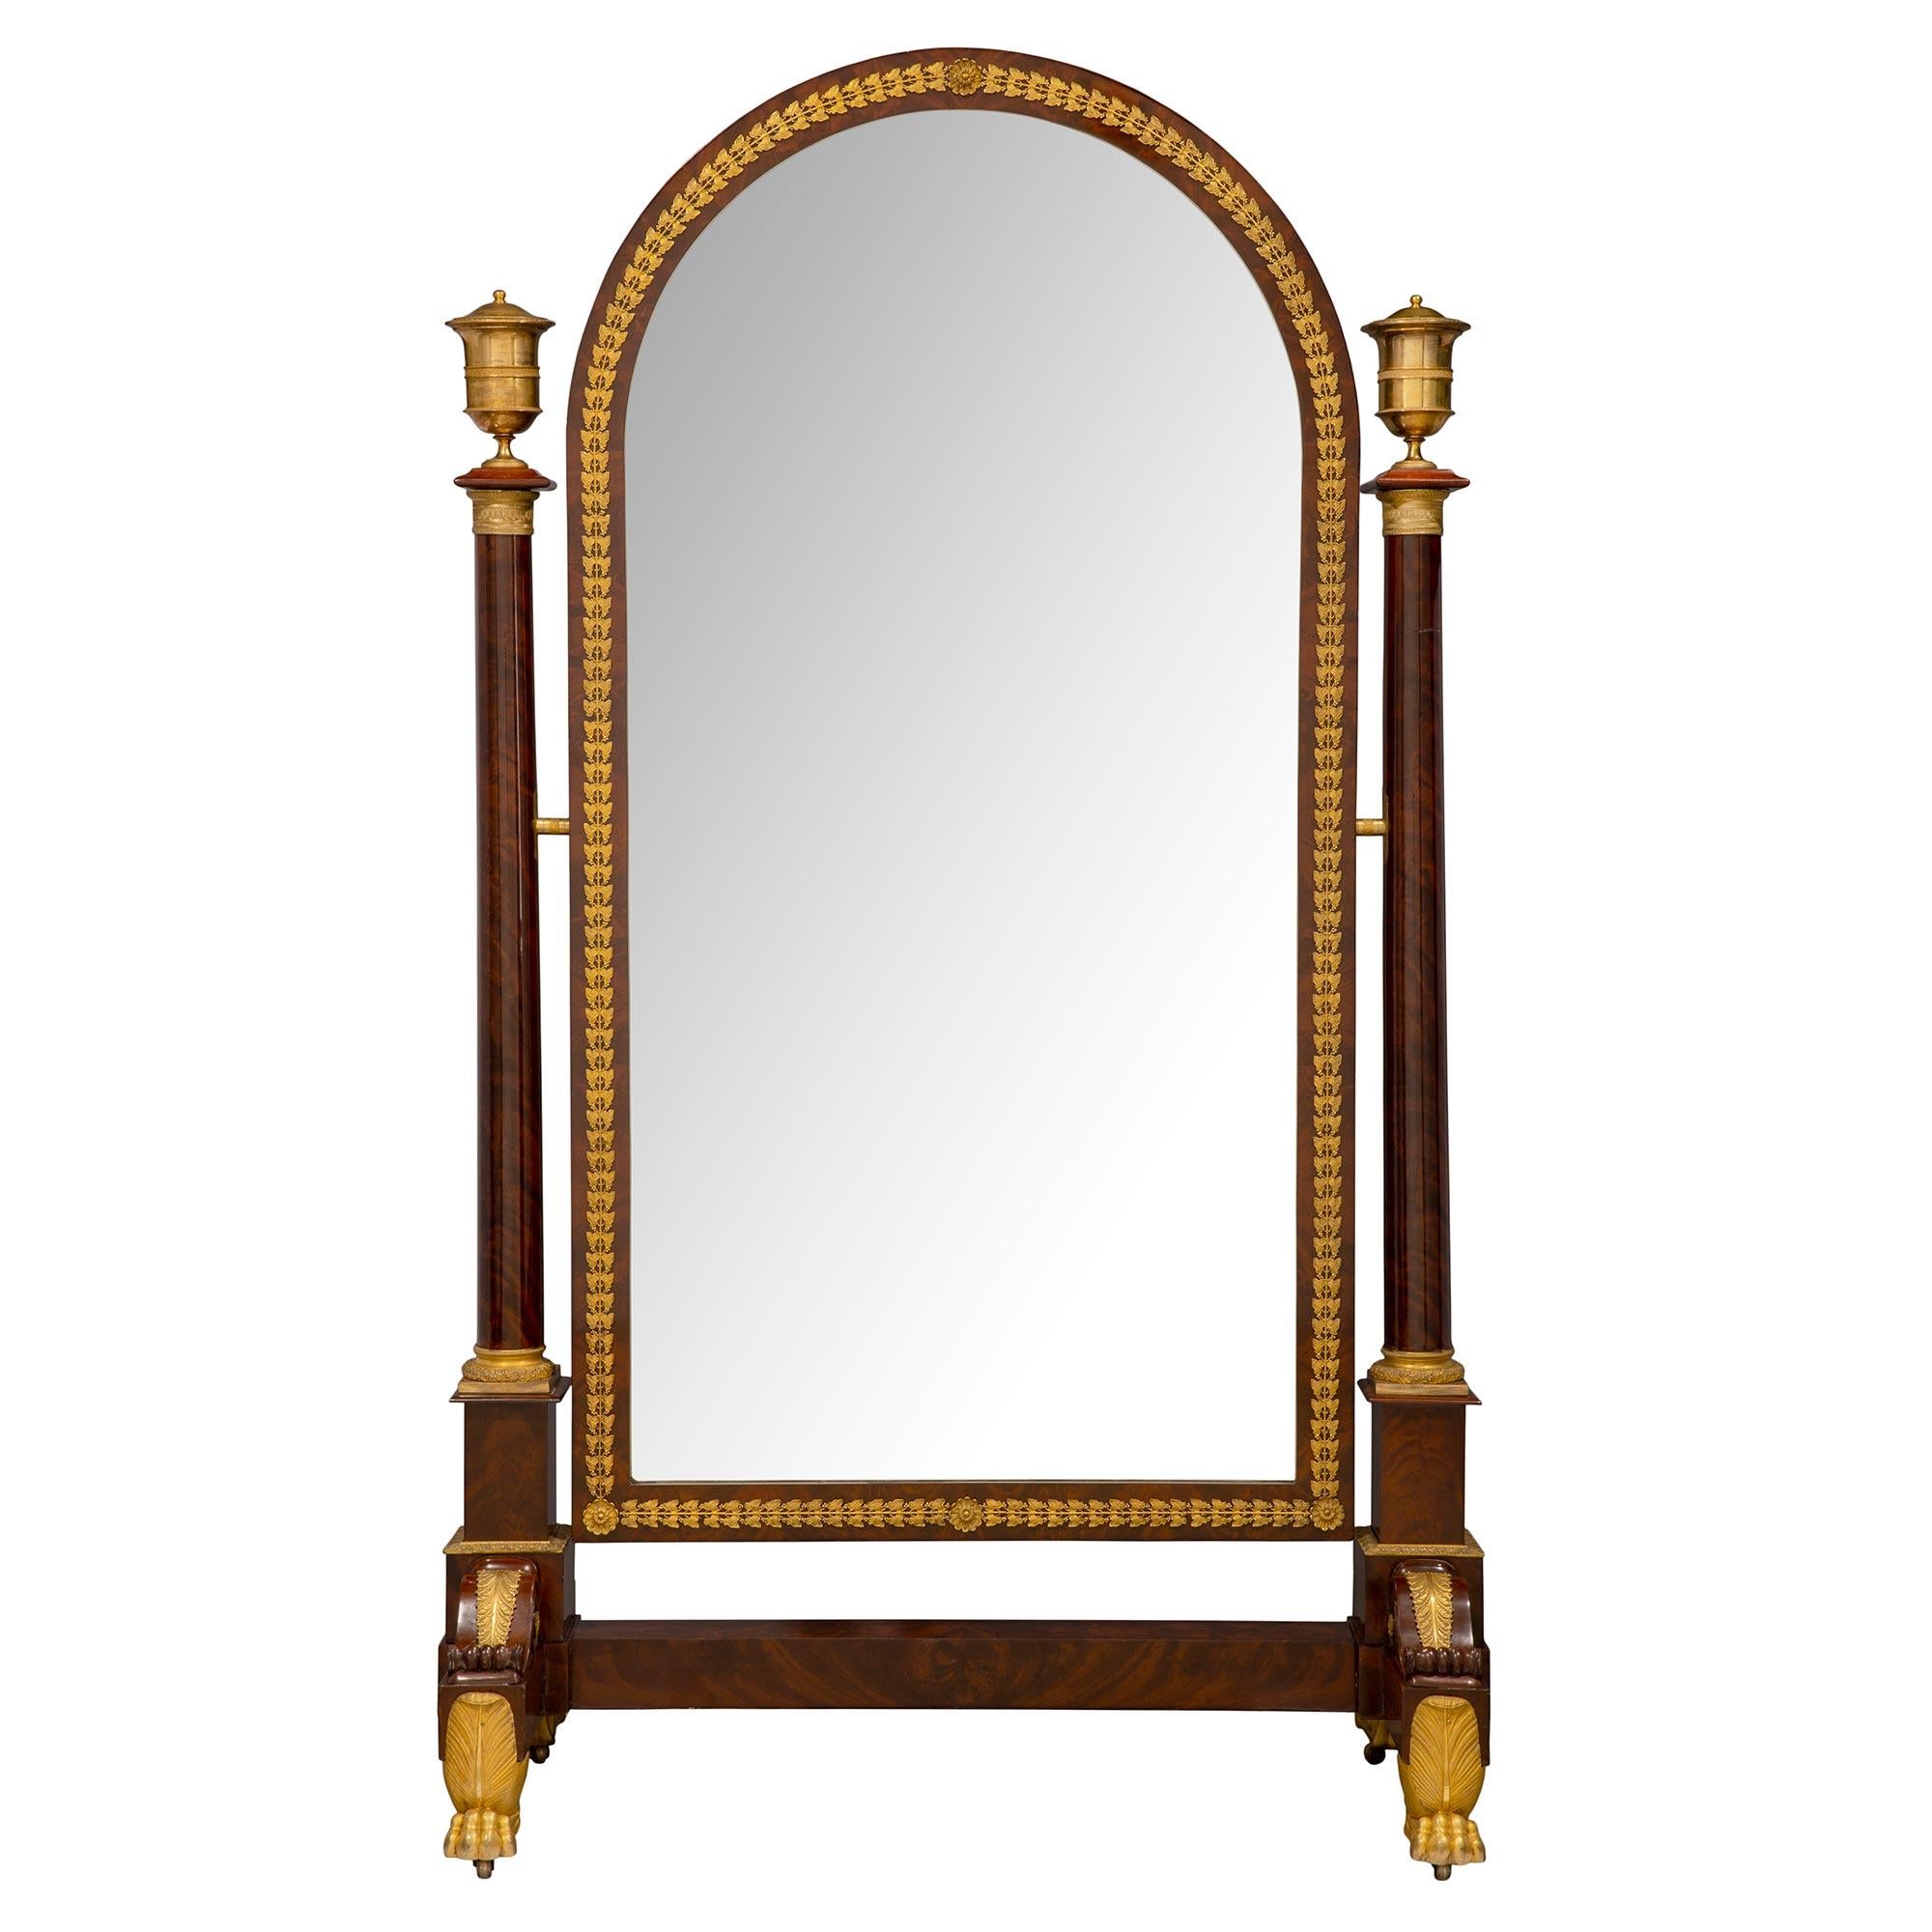 Eine sensationelle und sehr detaillierte Französisch 19. Jahrhundert Empire-Periode Ormolu montiert Mahagoni Psyche Spiegel. Der Spiegel wird von einem beeindruckenden Ormolu-Support unter einem dicken Mahagoni-Sockel und 